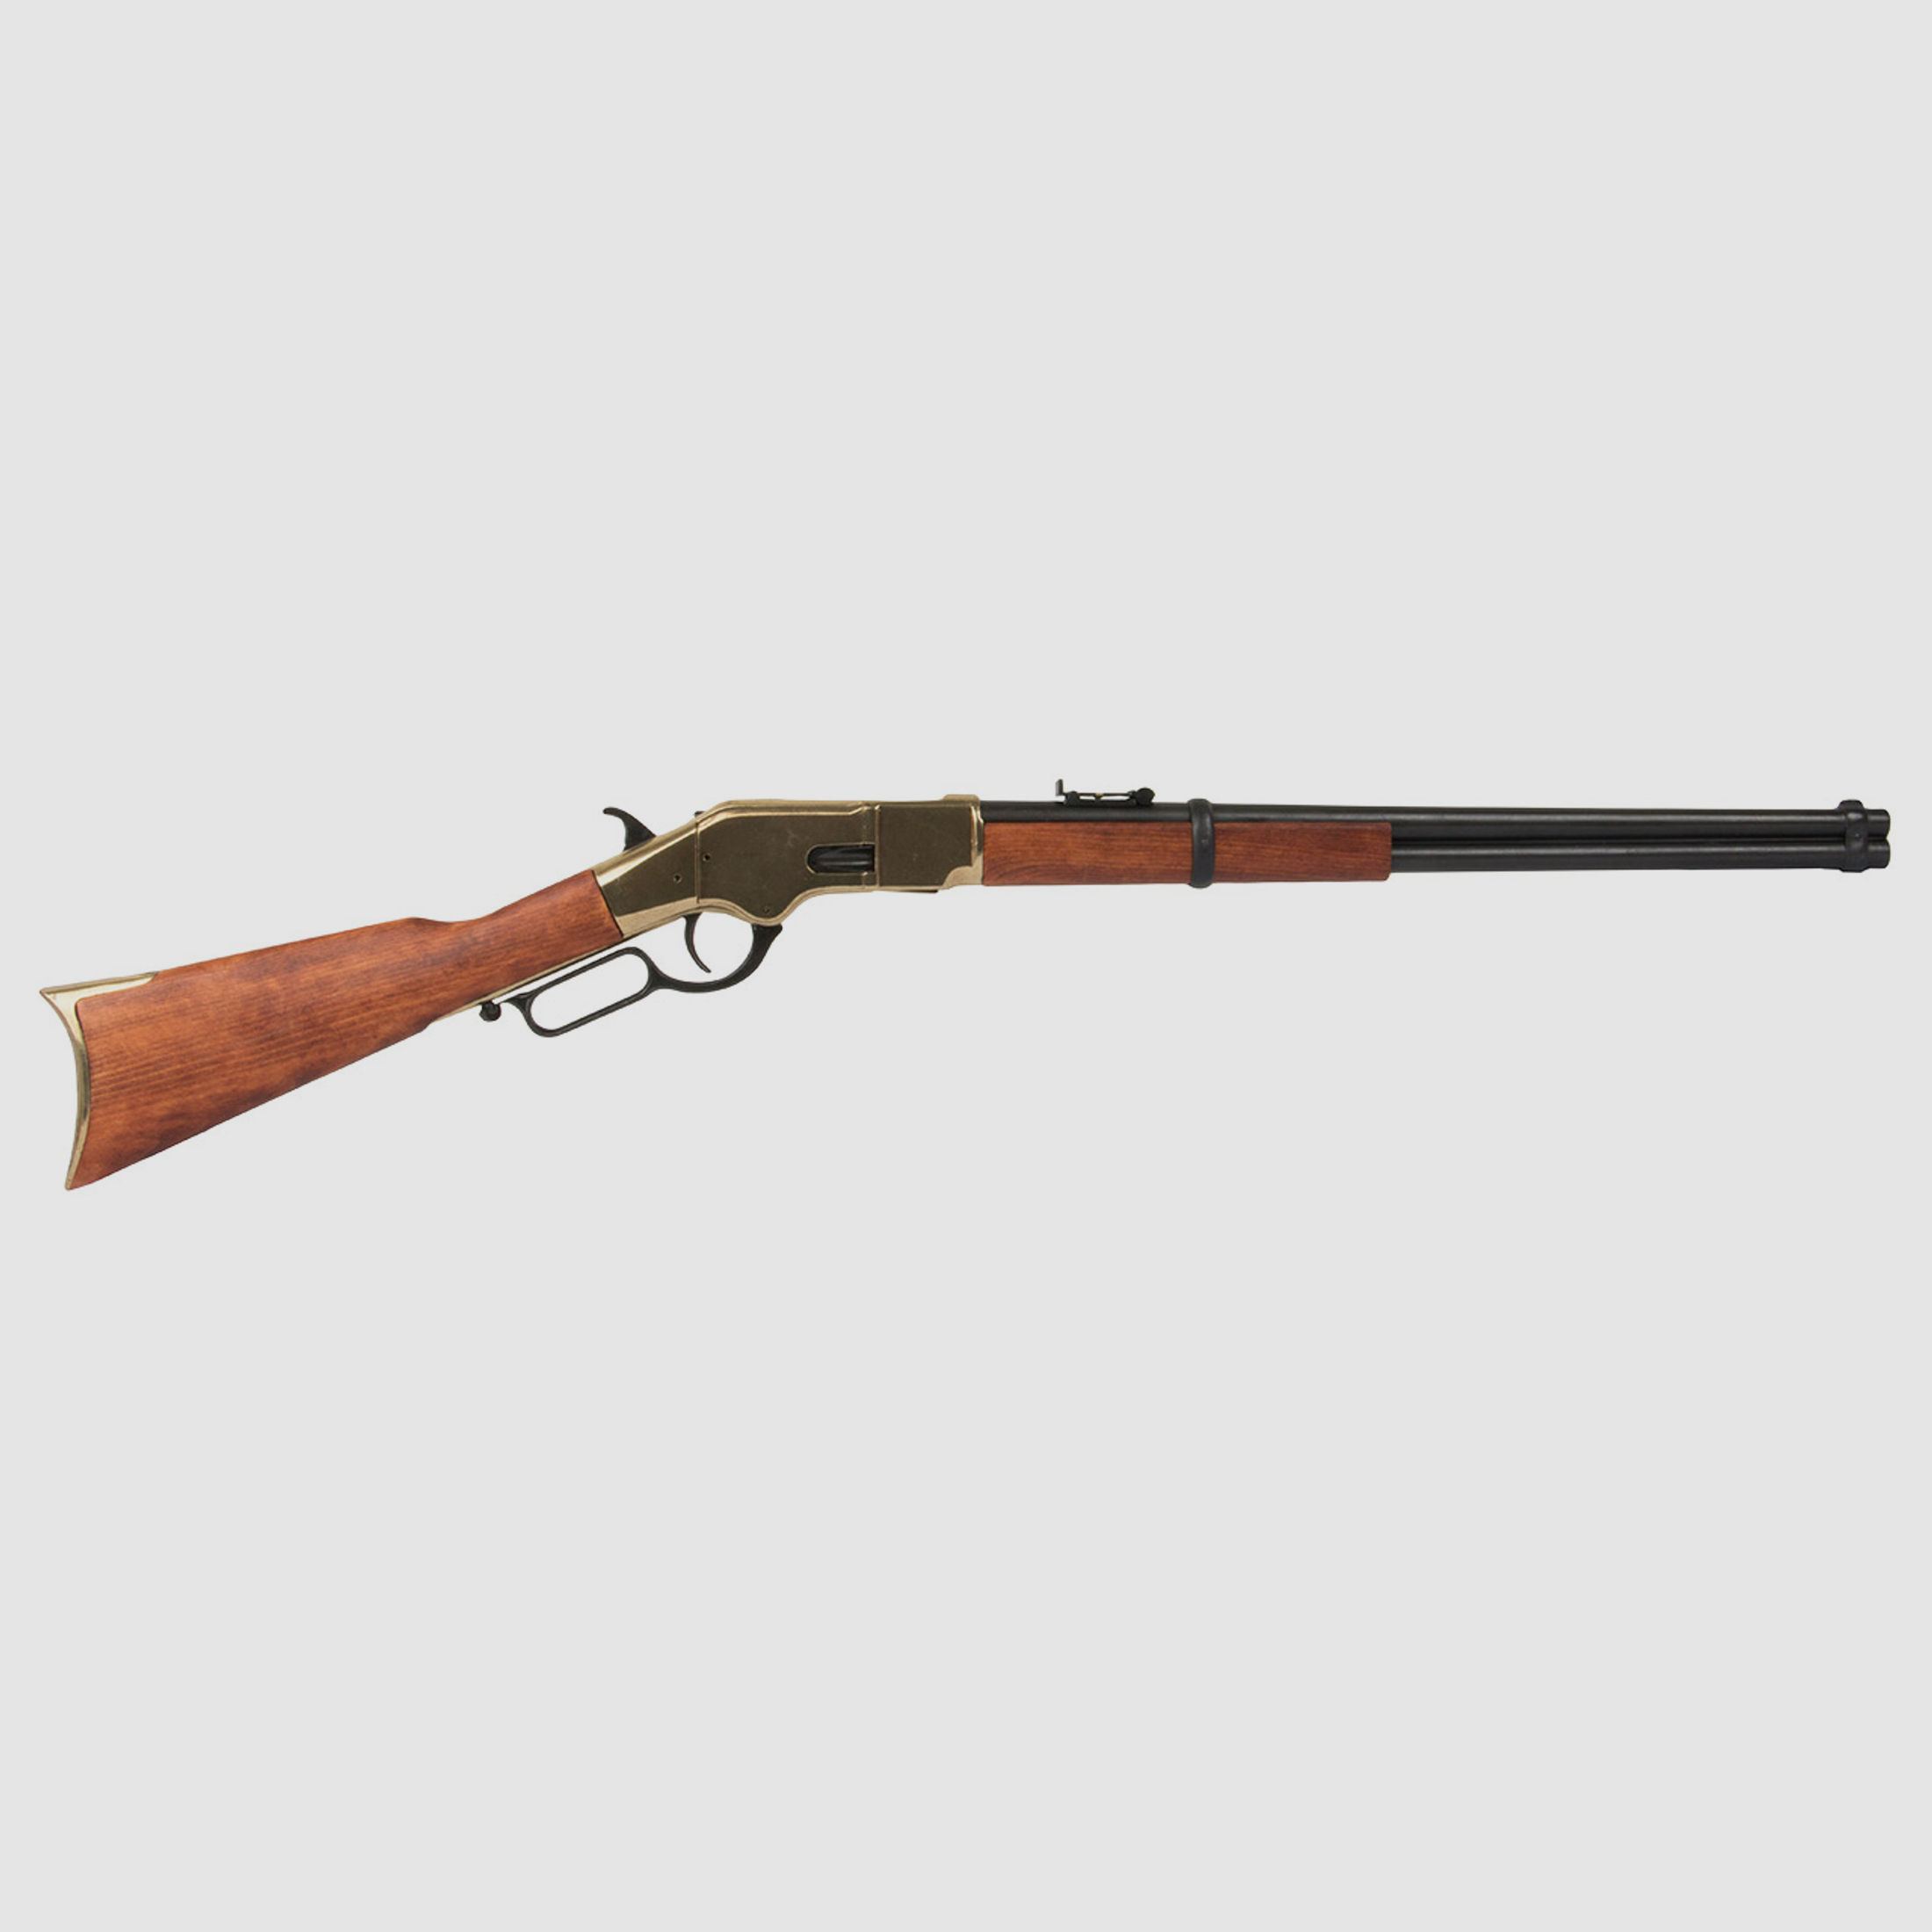 Deko Gewehr Winchester USA 1866 Carbine lever action voll beweglich LĂ¤nge 100 cm messing